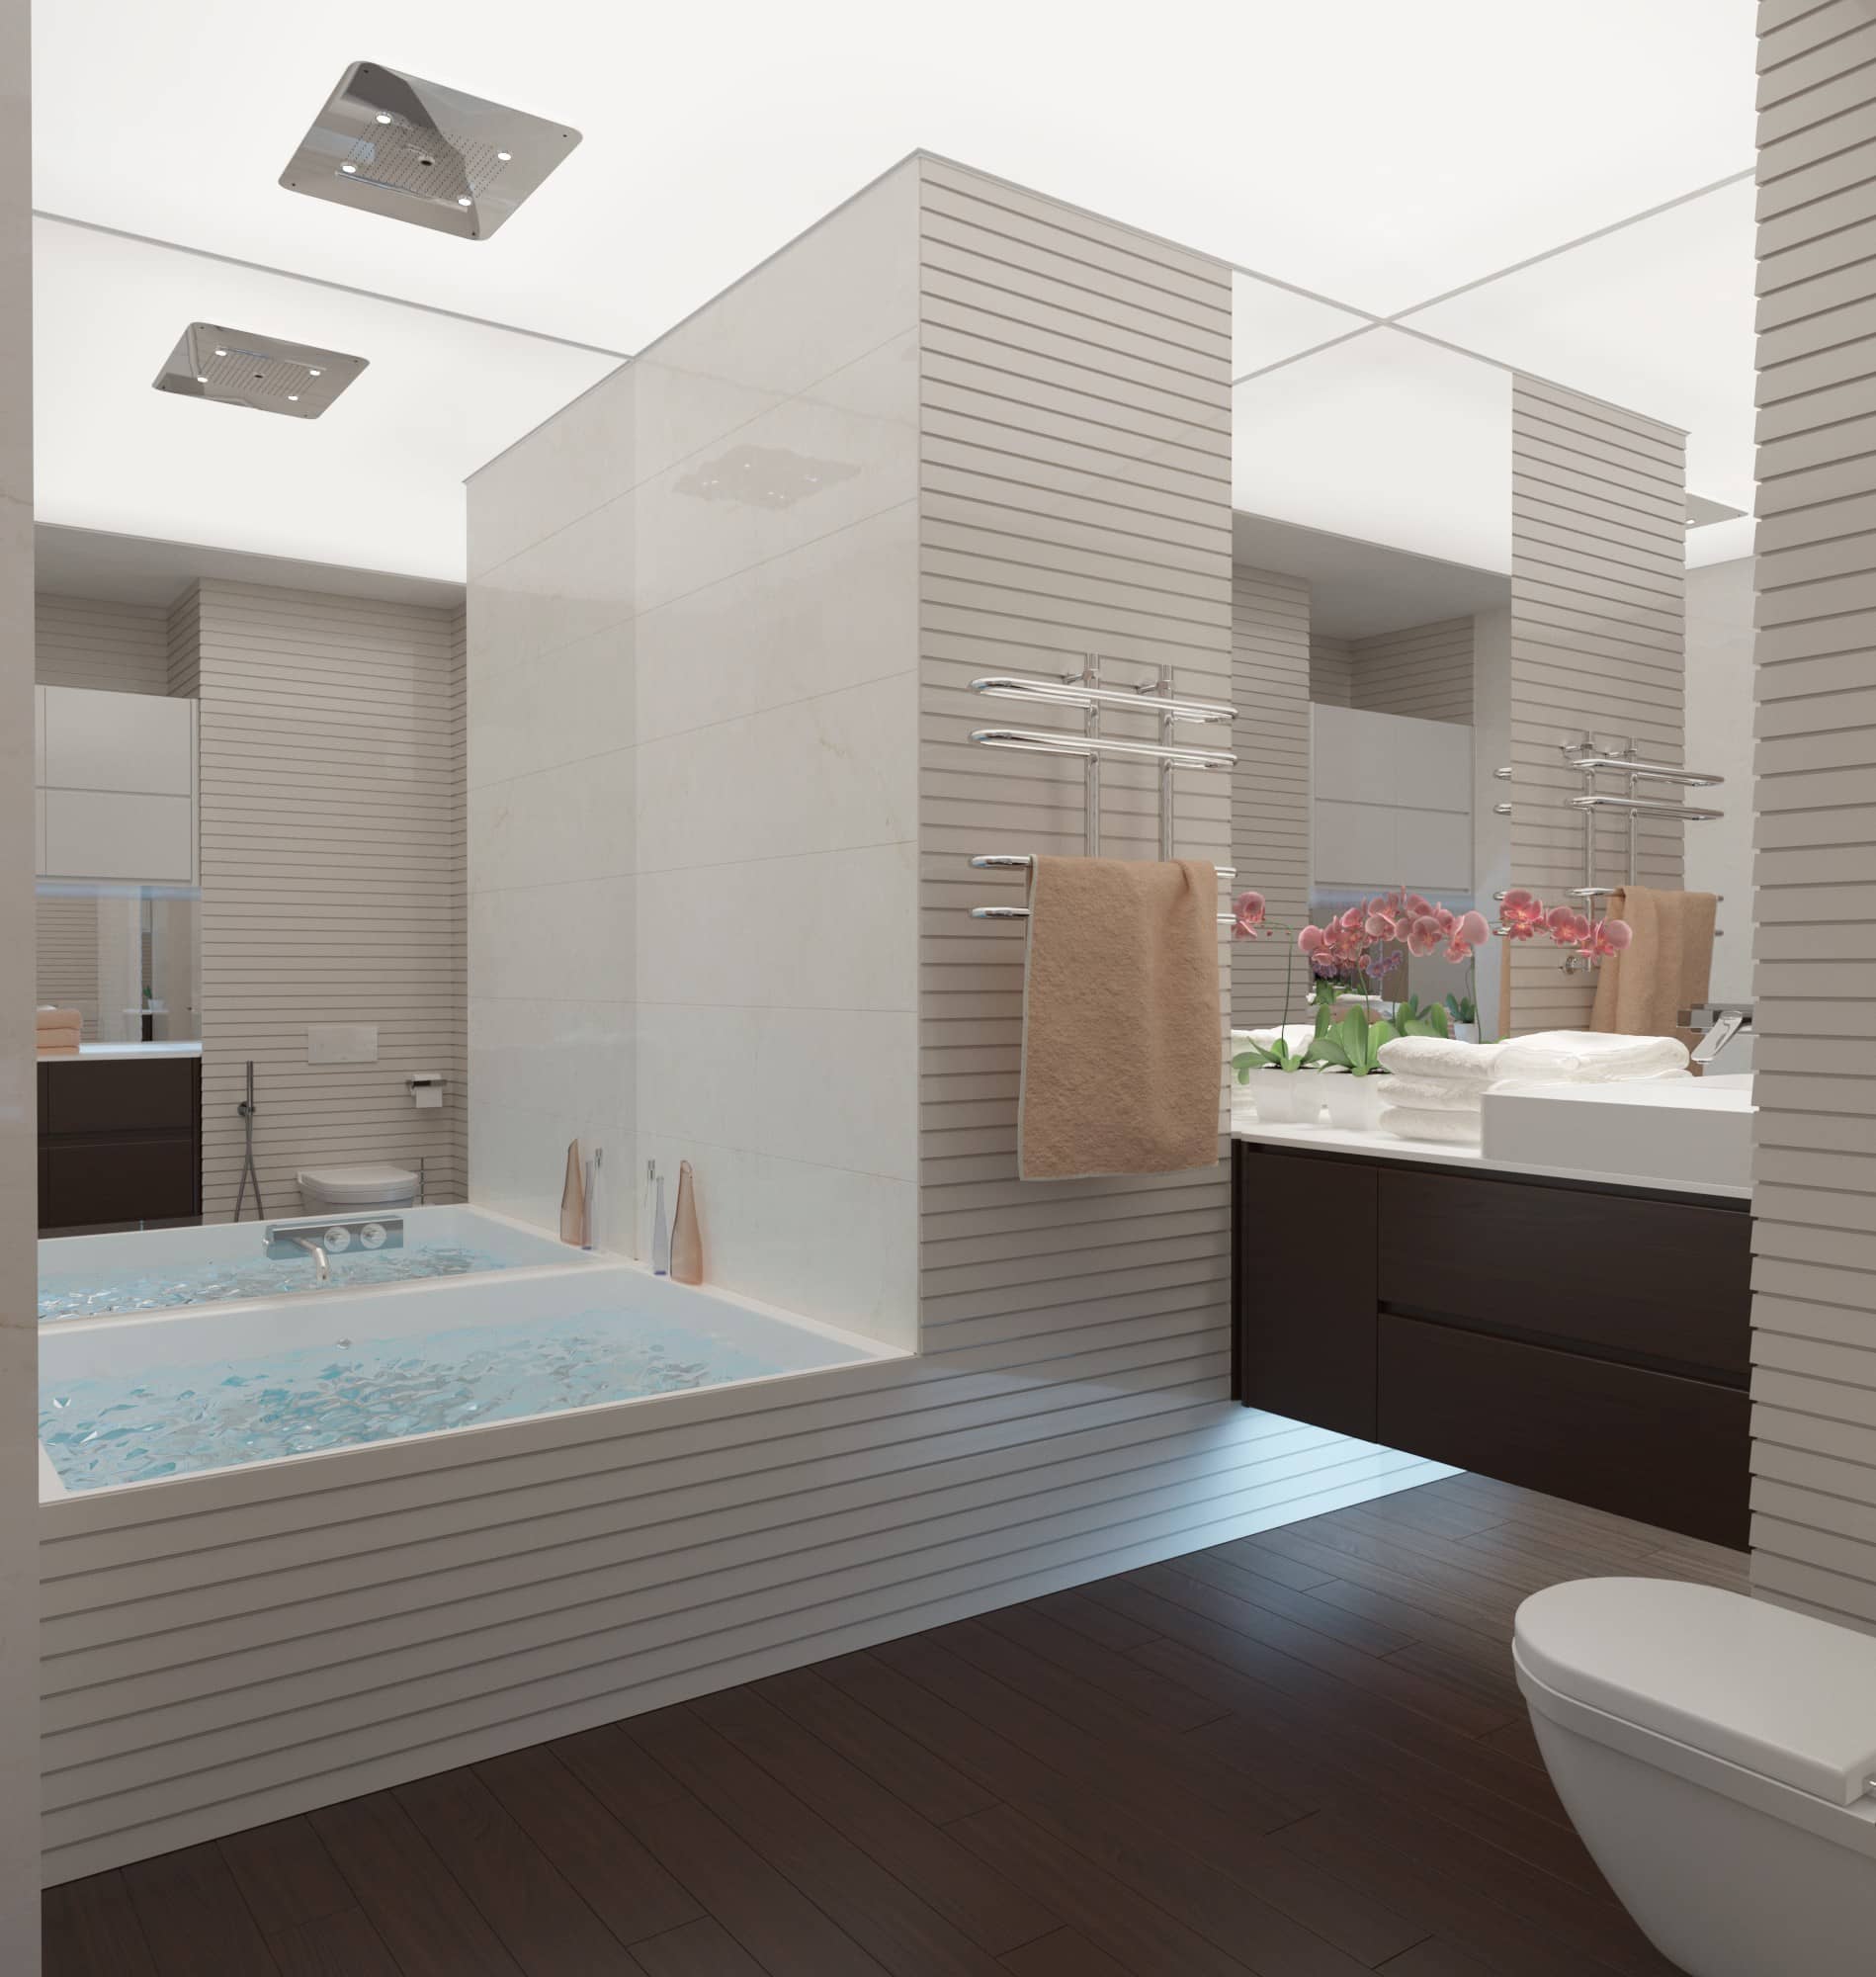 Квадратная ванна встроенная в общий интерьер ванной комнаты